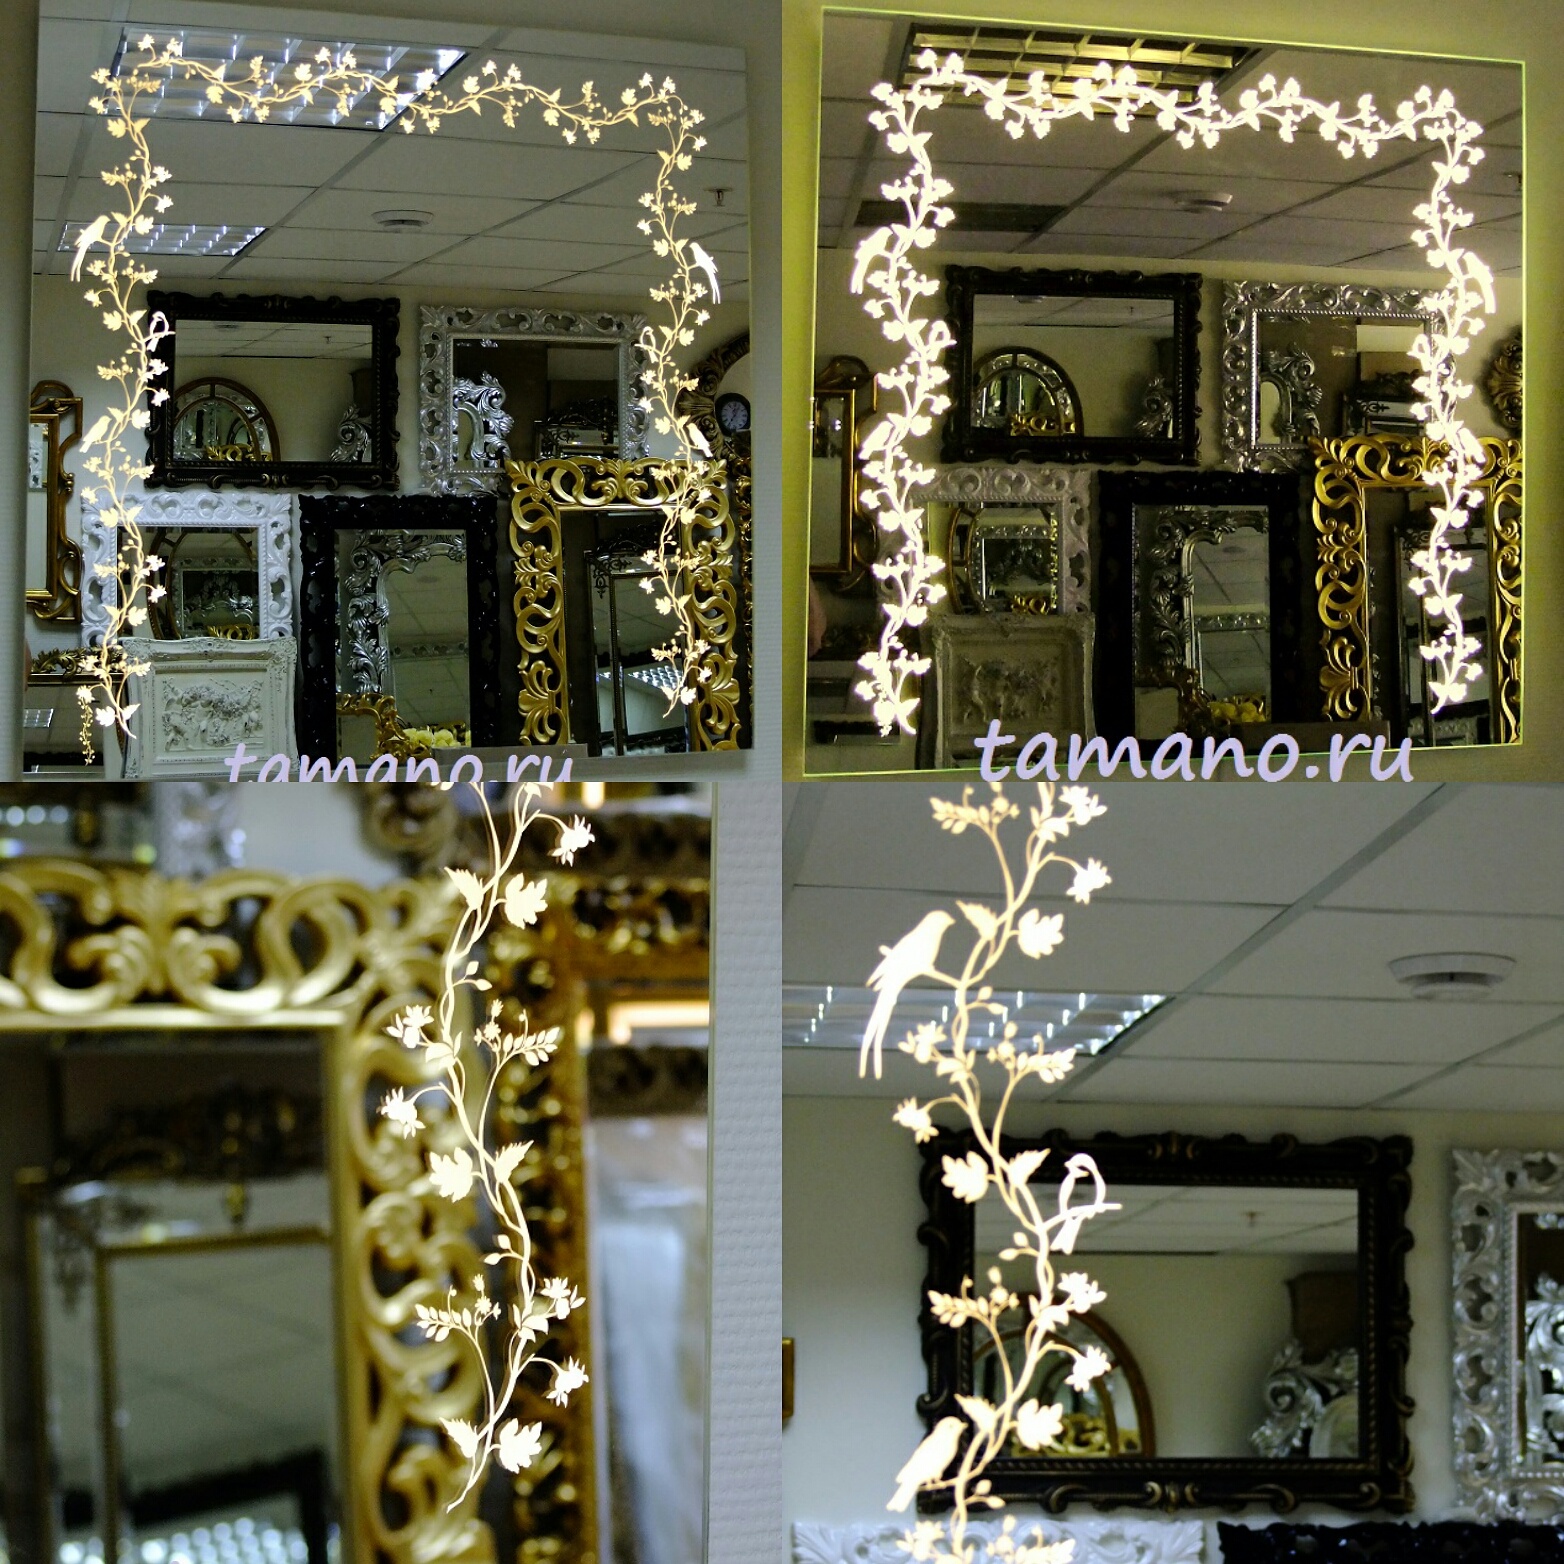 Квадратное зеркало с тёплой светодиодной подсветкой Райские птички, 80см х 80см в Тамано.руСтоимость 11900 руб.